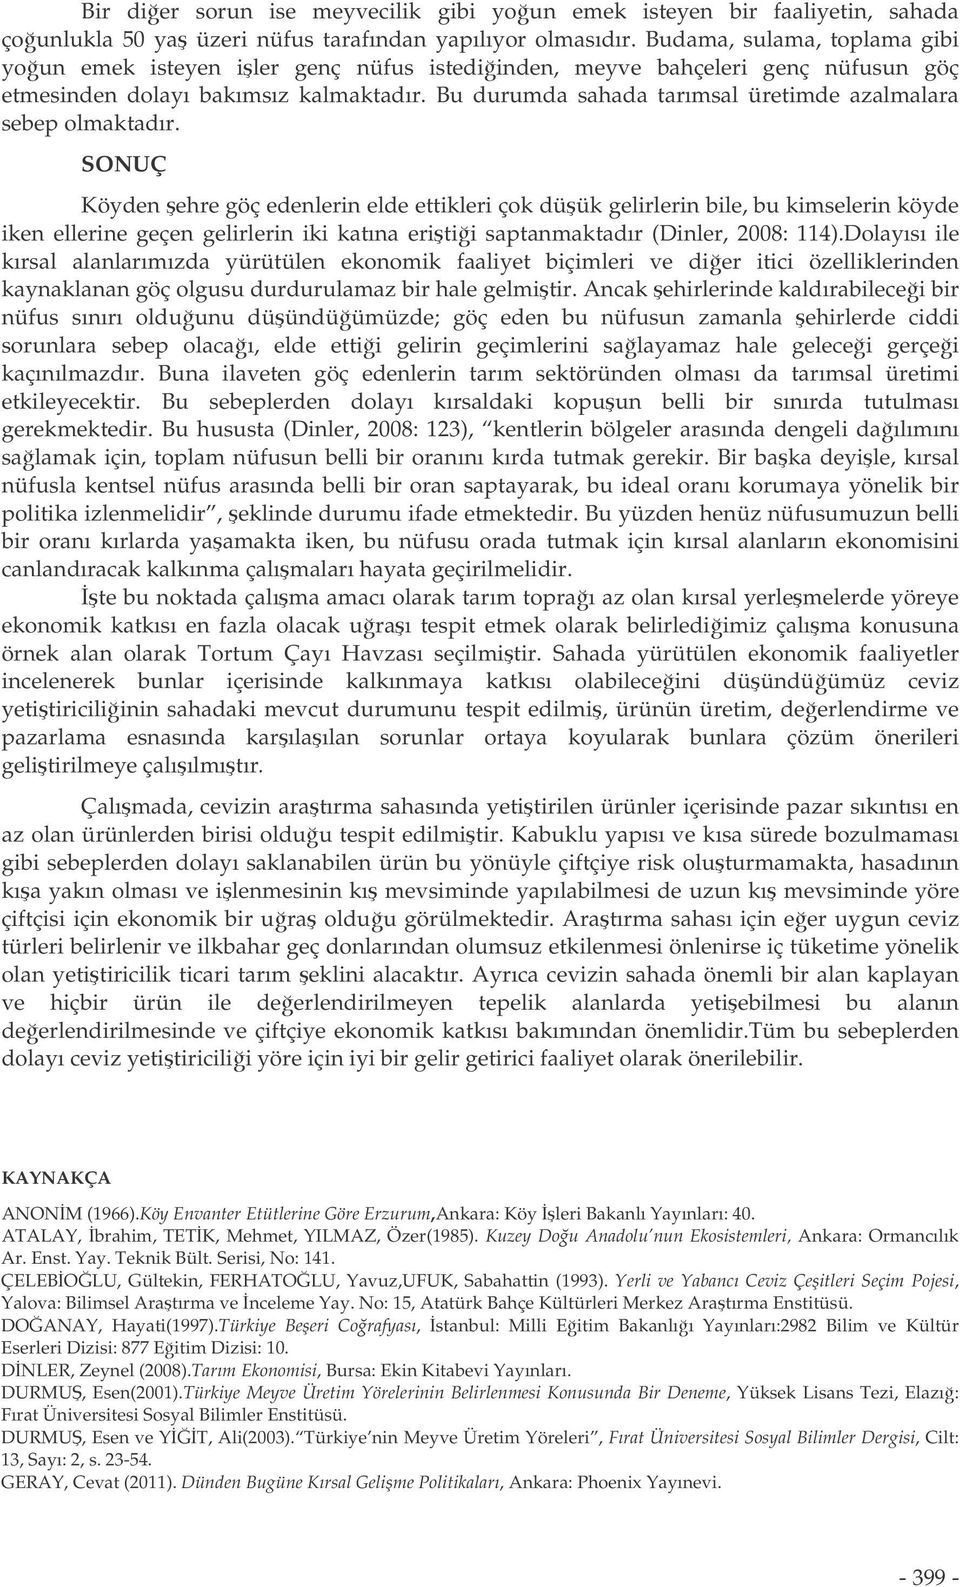 KARAKUZULU, Zerrin(2002). Karacabey Tarım letmesinin Ekonomik Corafya Açısından ncelenmesi, 29. Corafya Meslek Haftası, Bildiriler, s 161-192. KODAY, Saliha ve ERHAN, Kübra(2009).